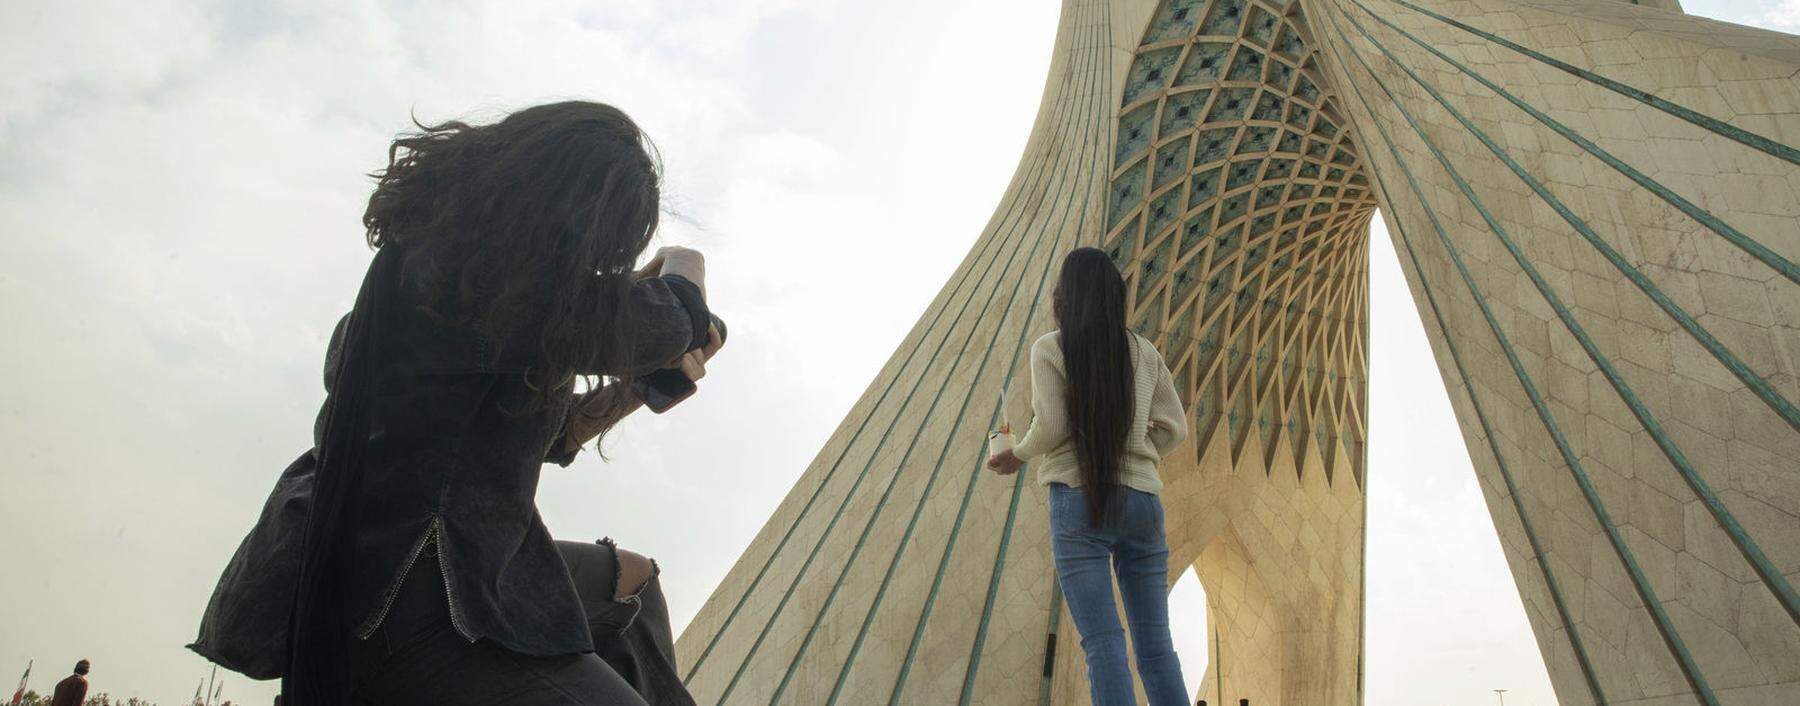 Zwei junge Frauen unter dem Azadi-Bogen in Teheran – ohne Kopftuch.